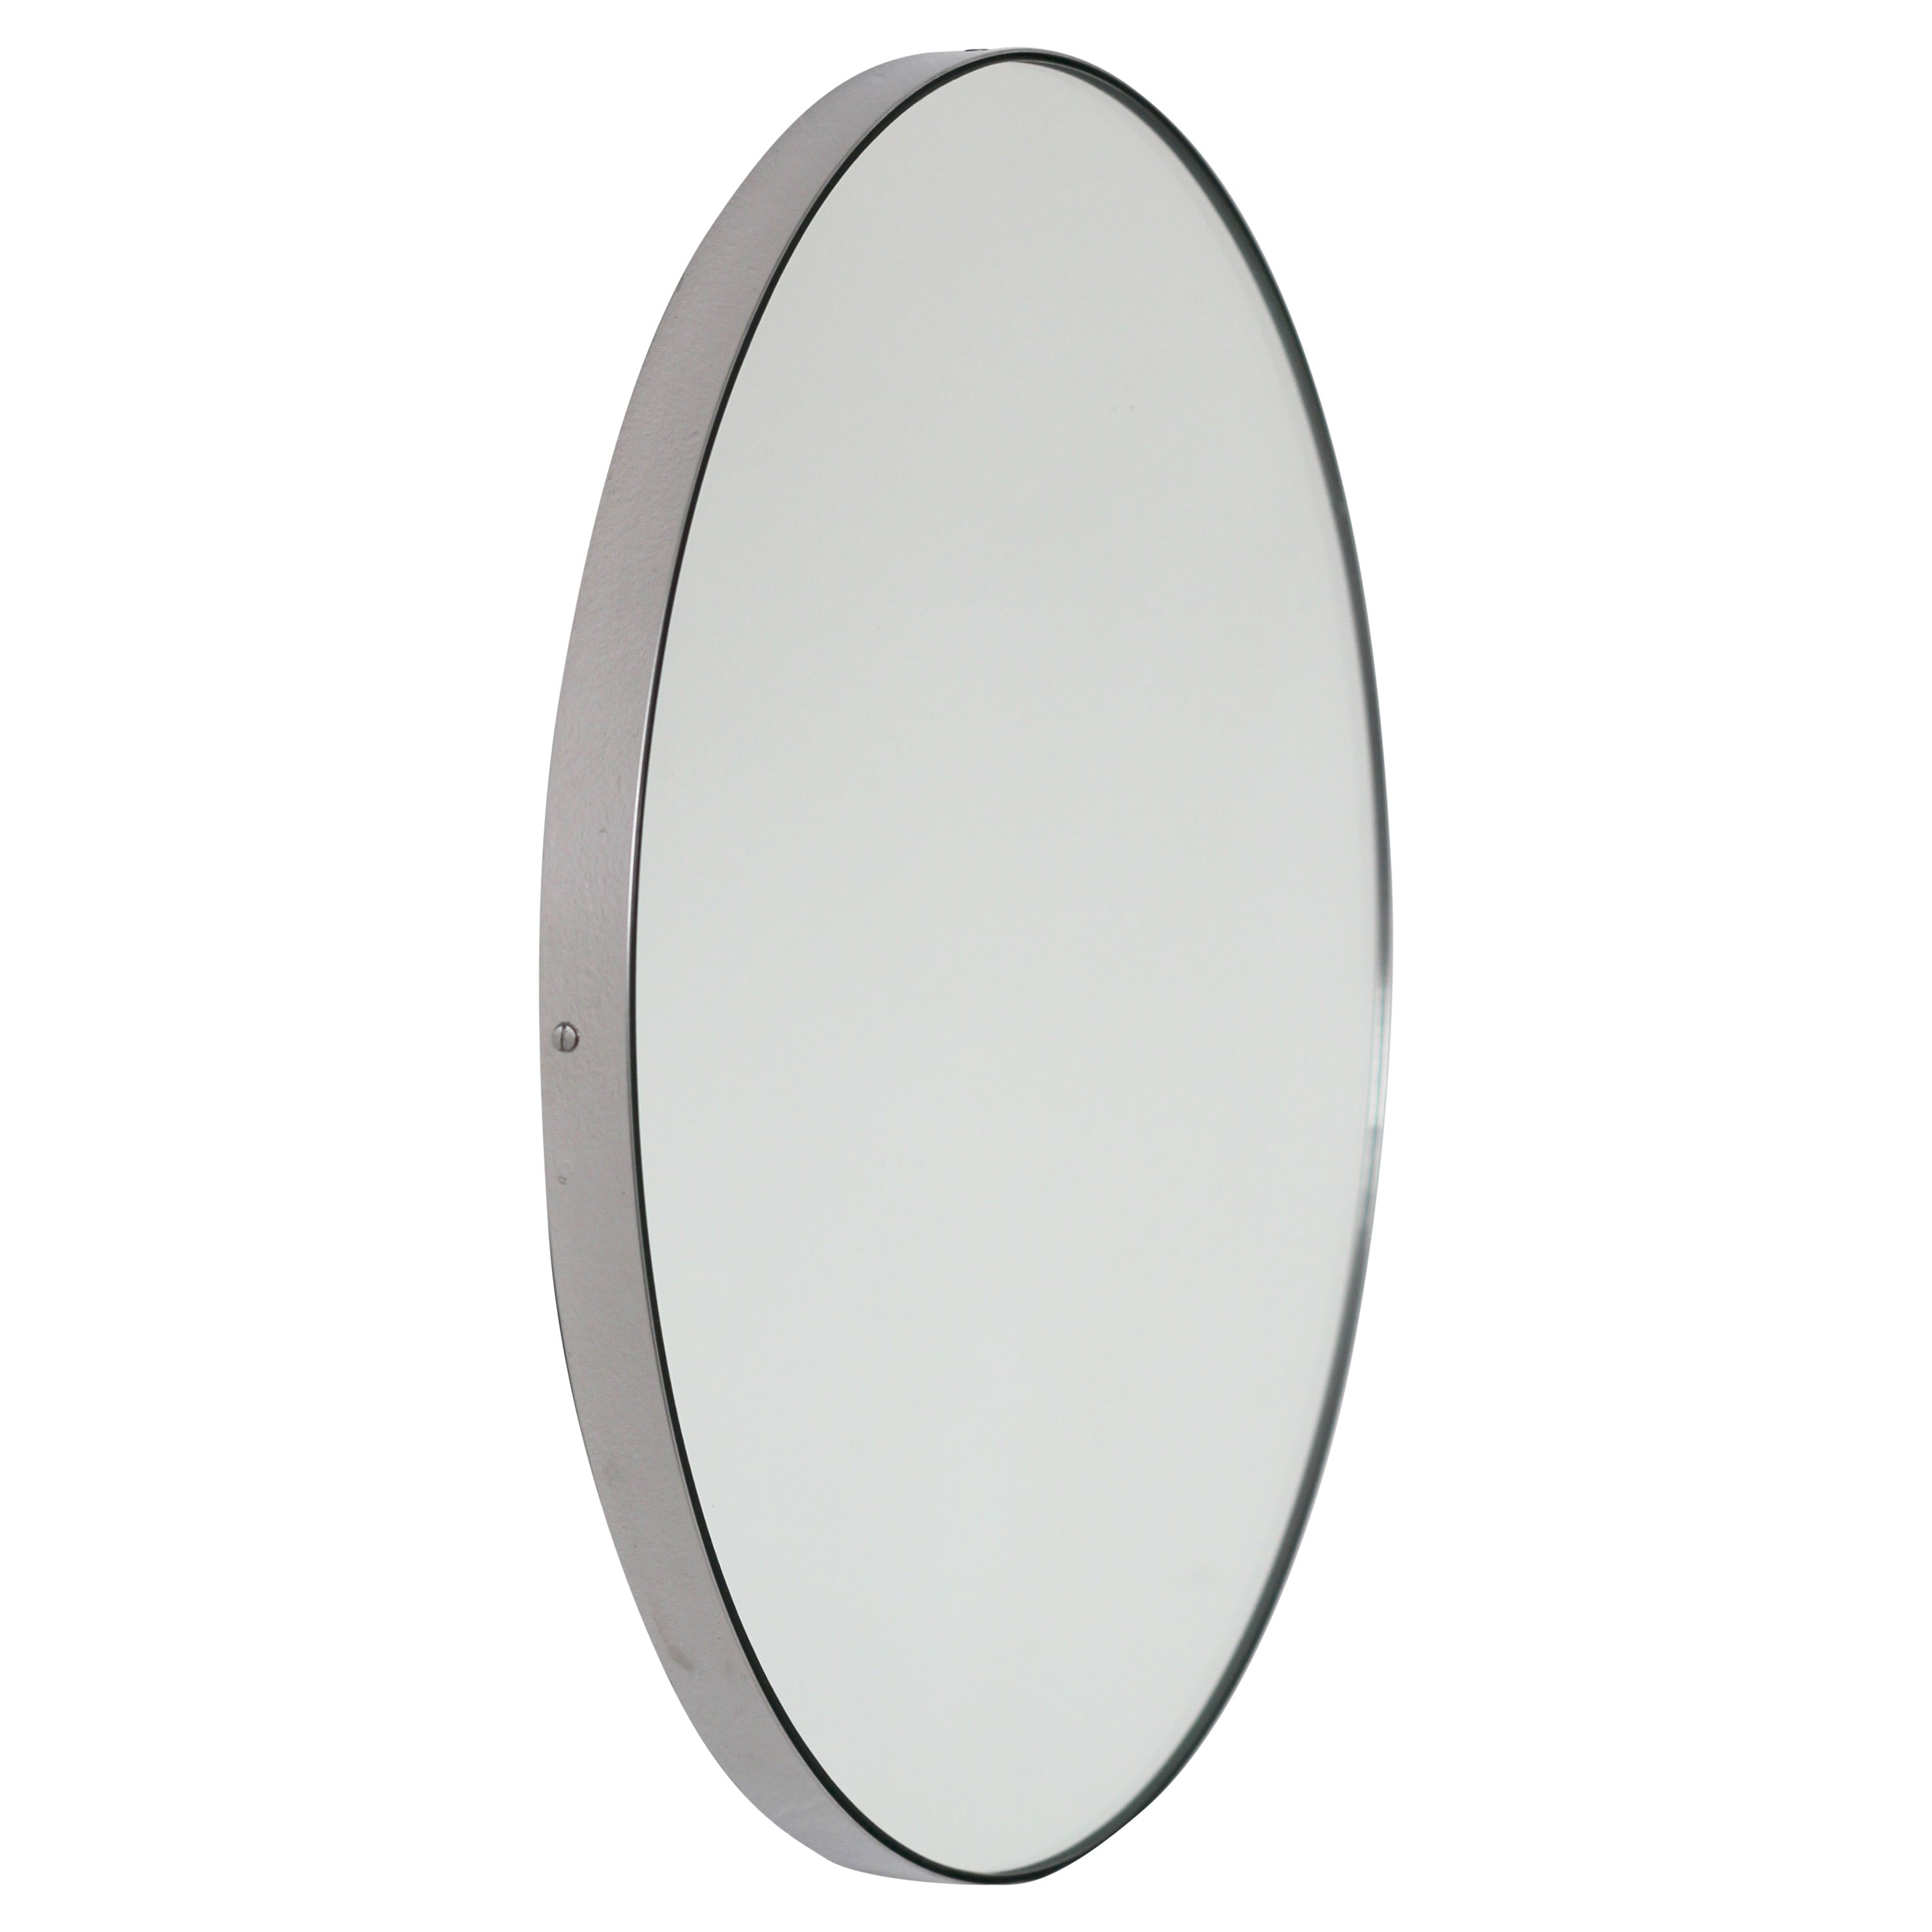 Grand miroir rond artisanal Orbis avec cadre en acier inoxydable